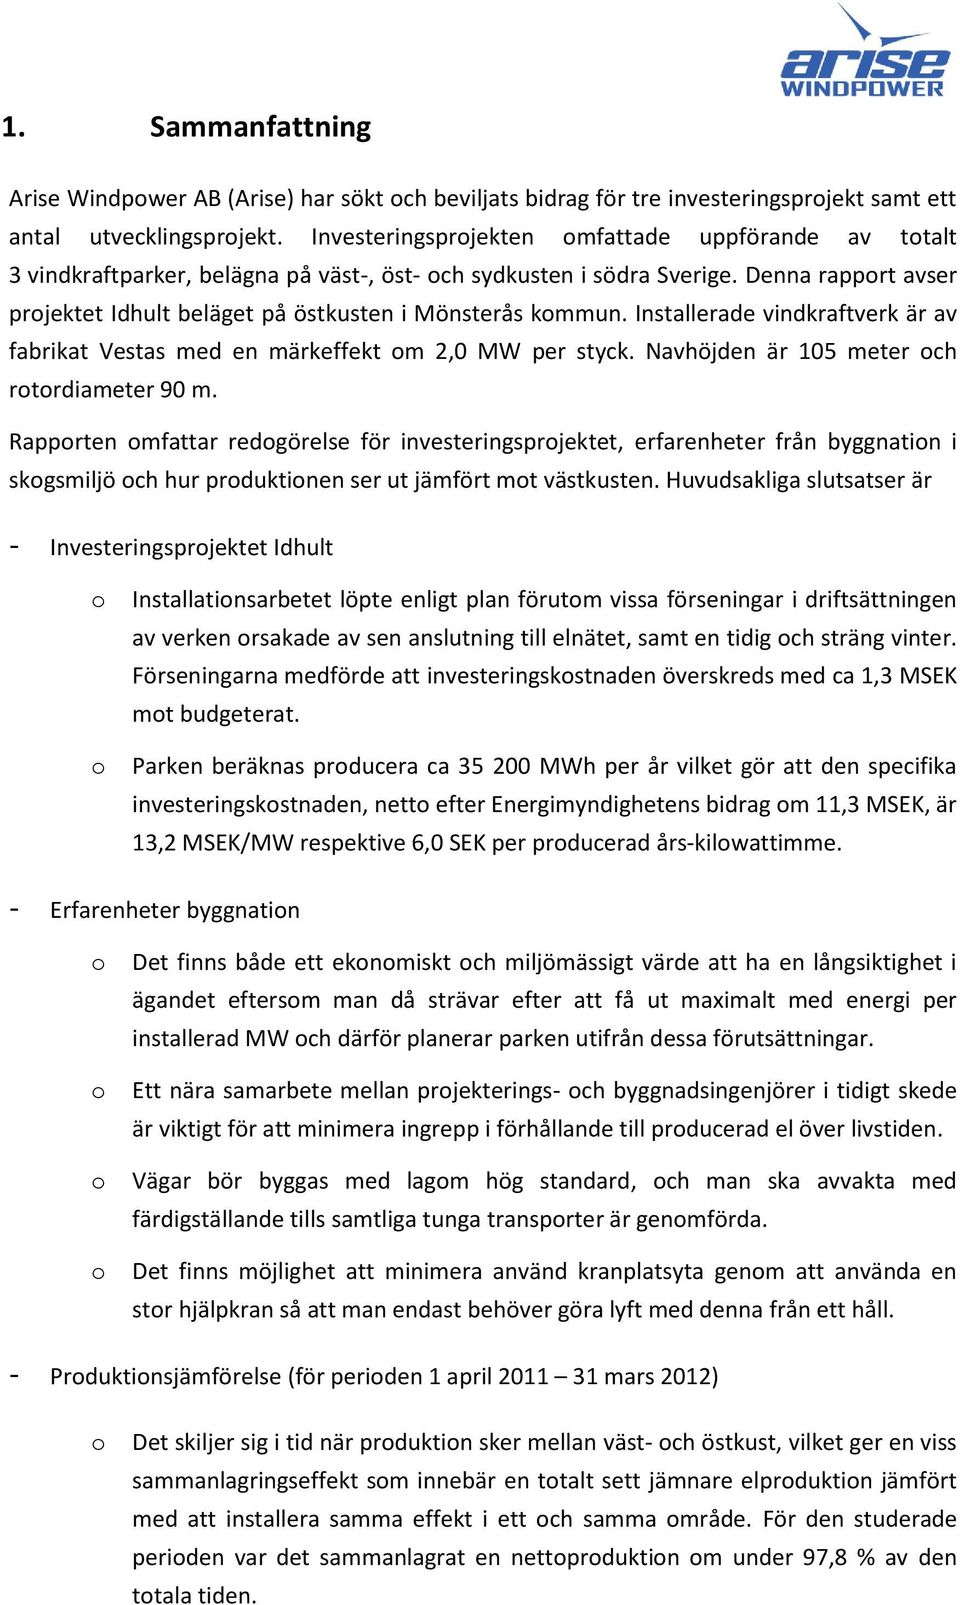 Denna rapport avser projektet Idhult beläget på östkusten i Mönsterås kommun. Installerade vindkraftverk är av fabrikat Vestas med en märkeffekt om 2,0 MW per styck.